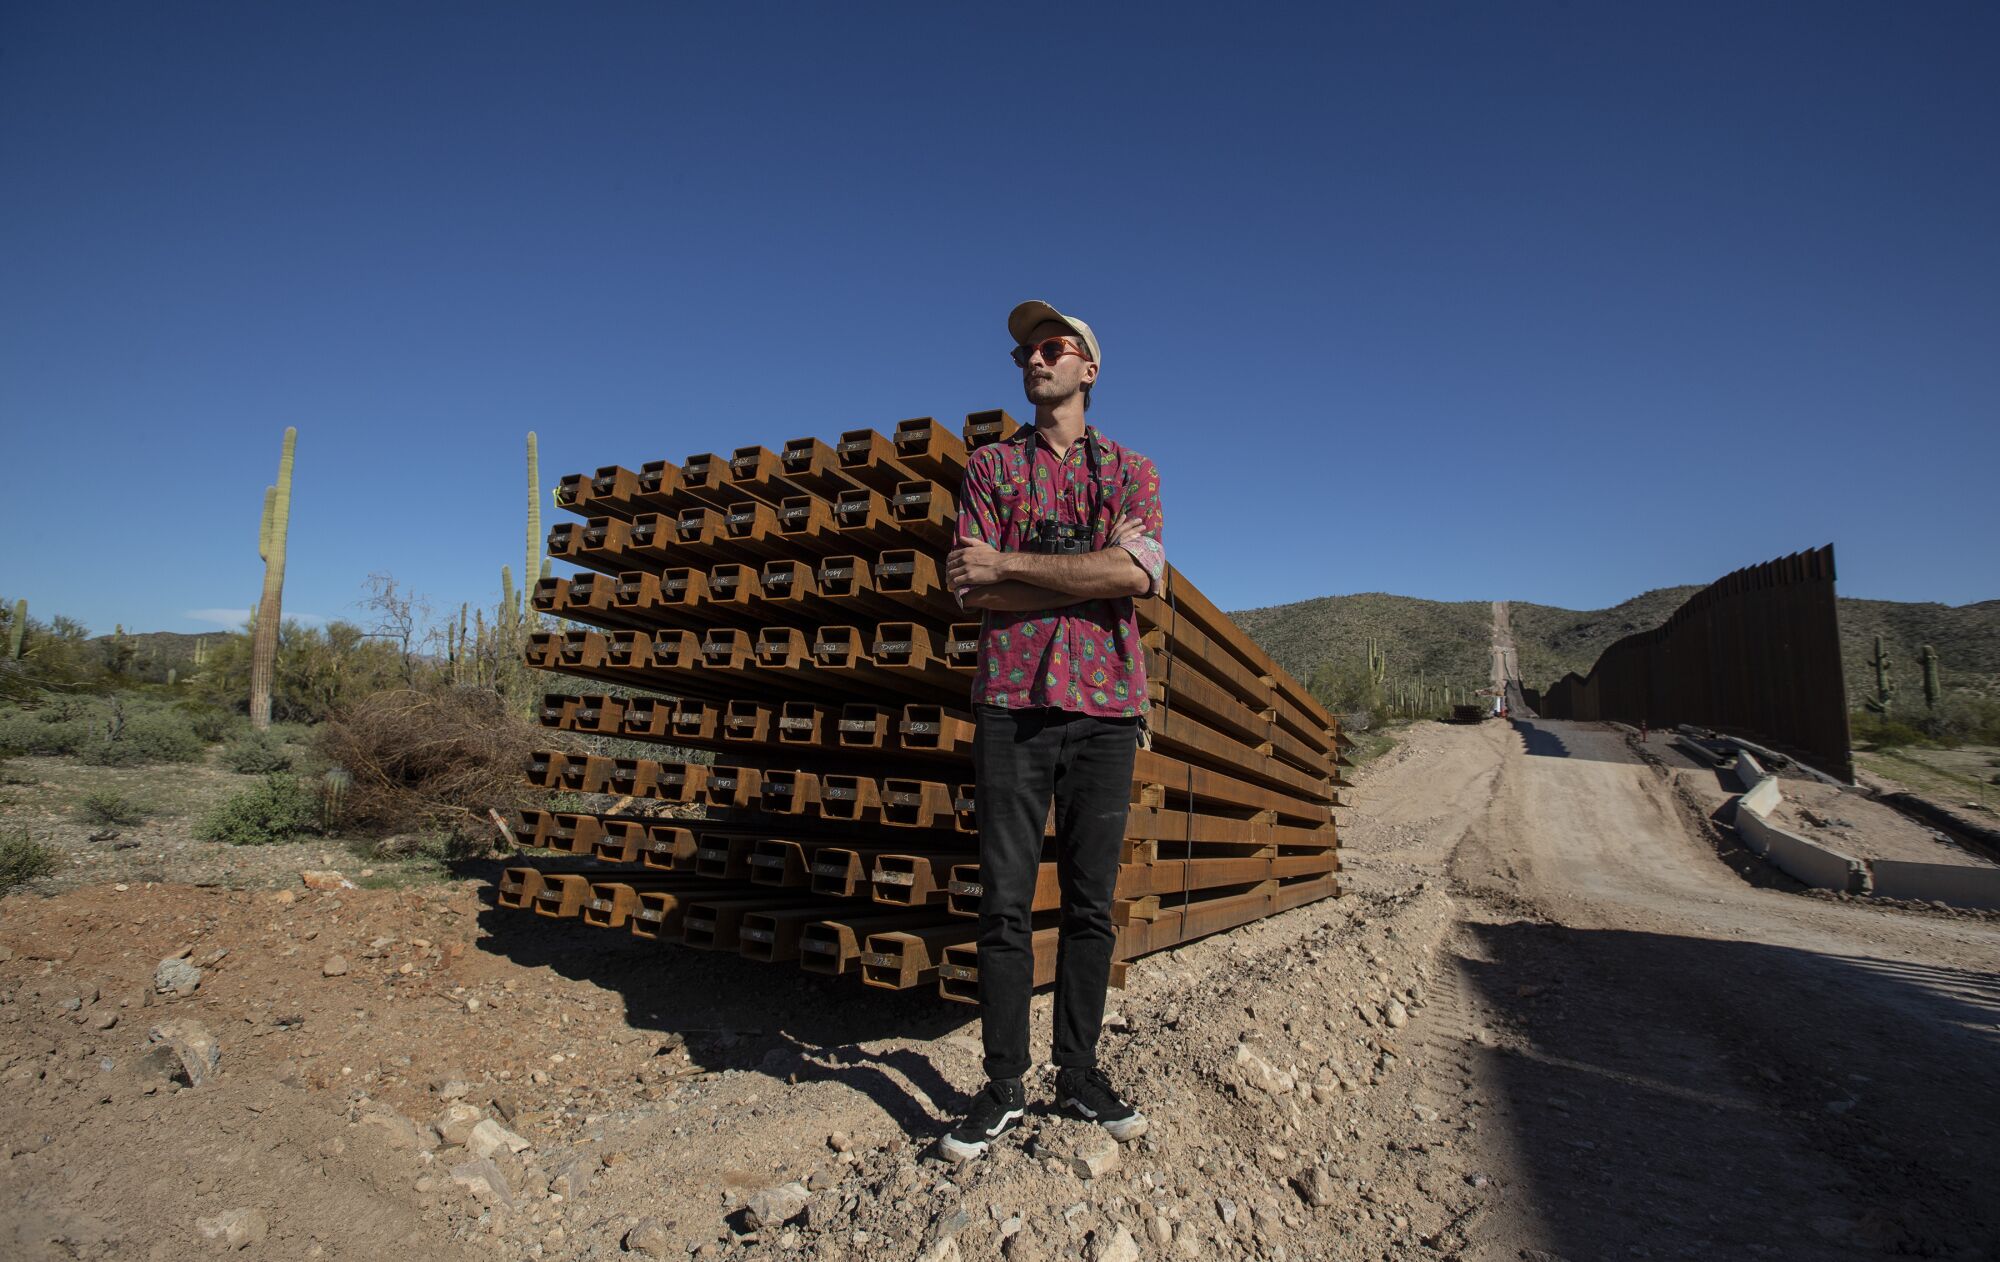 Laiken Jordahl, a Center for Biological Diversity borderlands campaigner, at Organ Pipe Cactus National Monument.